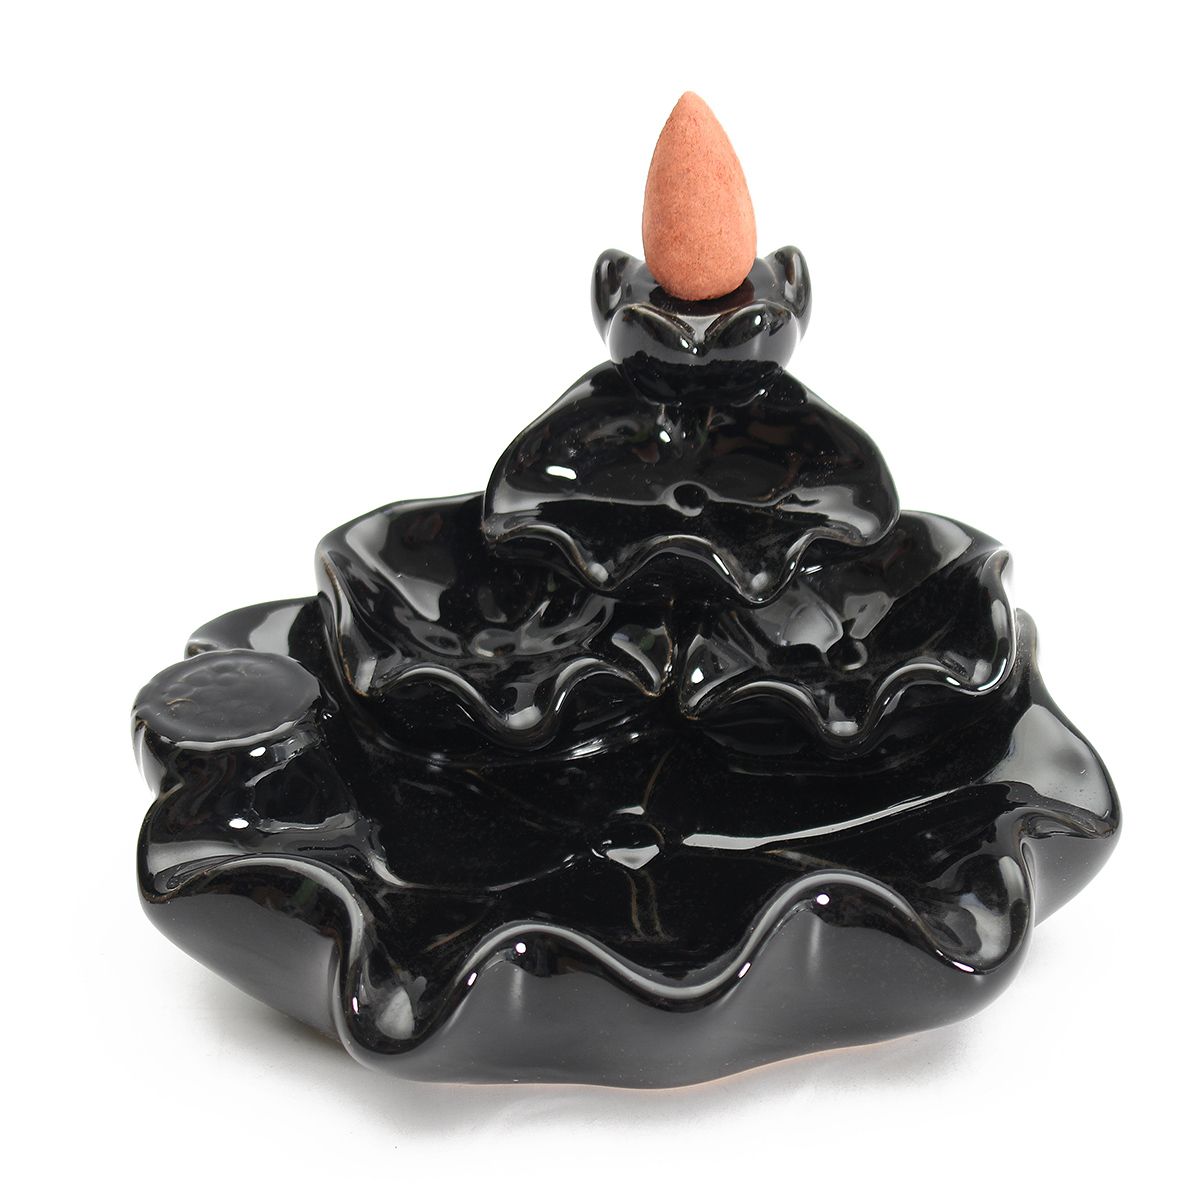 Black-Porcelain-Tower-Backflow-Incense-Burner-Ceramic-Buddhist-Cone-Holder-w-6Pcs-Incense-Cones-1357068